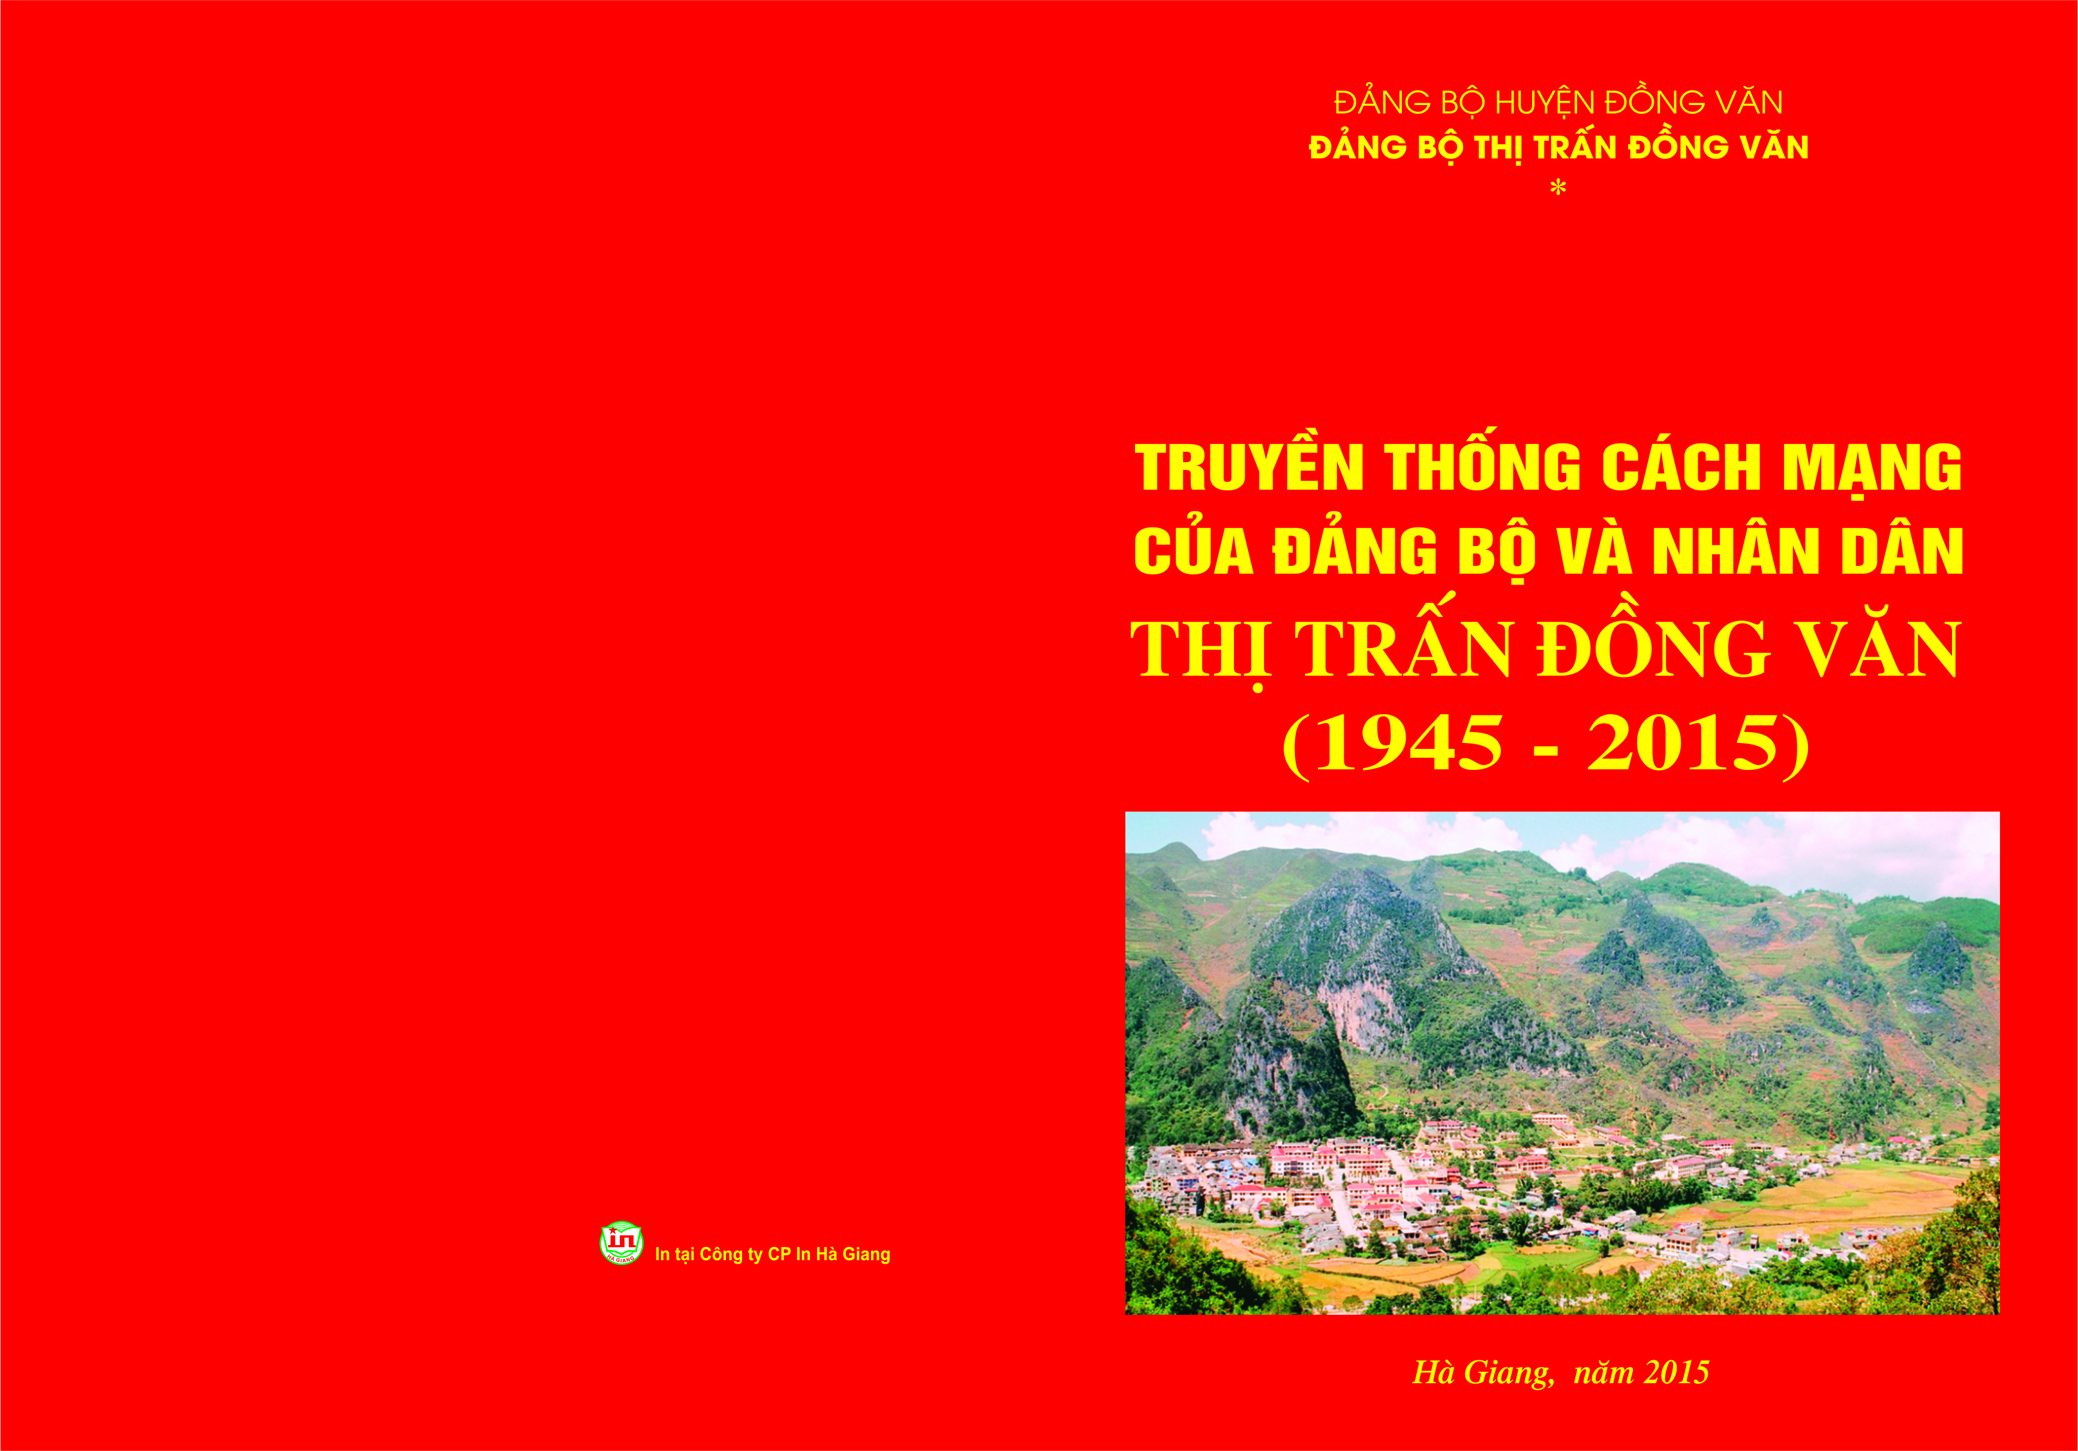 Truyền thống cách mạng của Đảng bộ và nhân dân thị trấn Đồng Văn (phần 2)